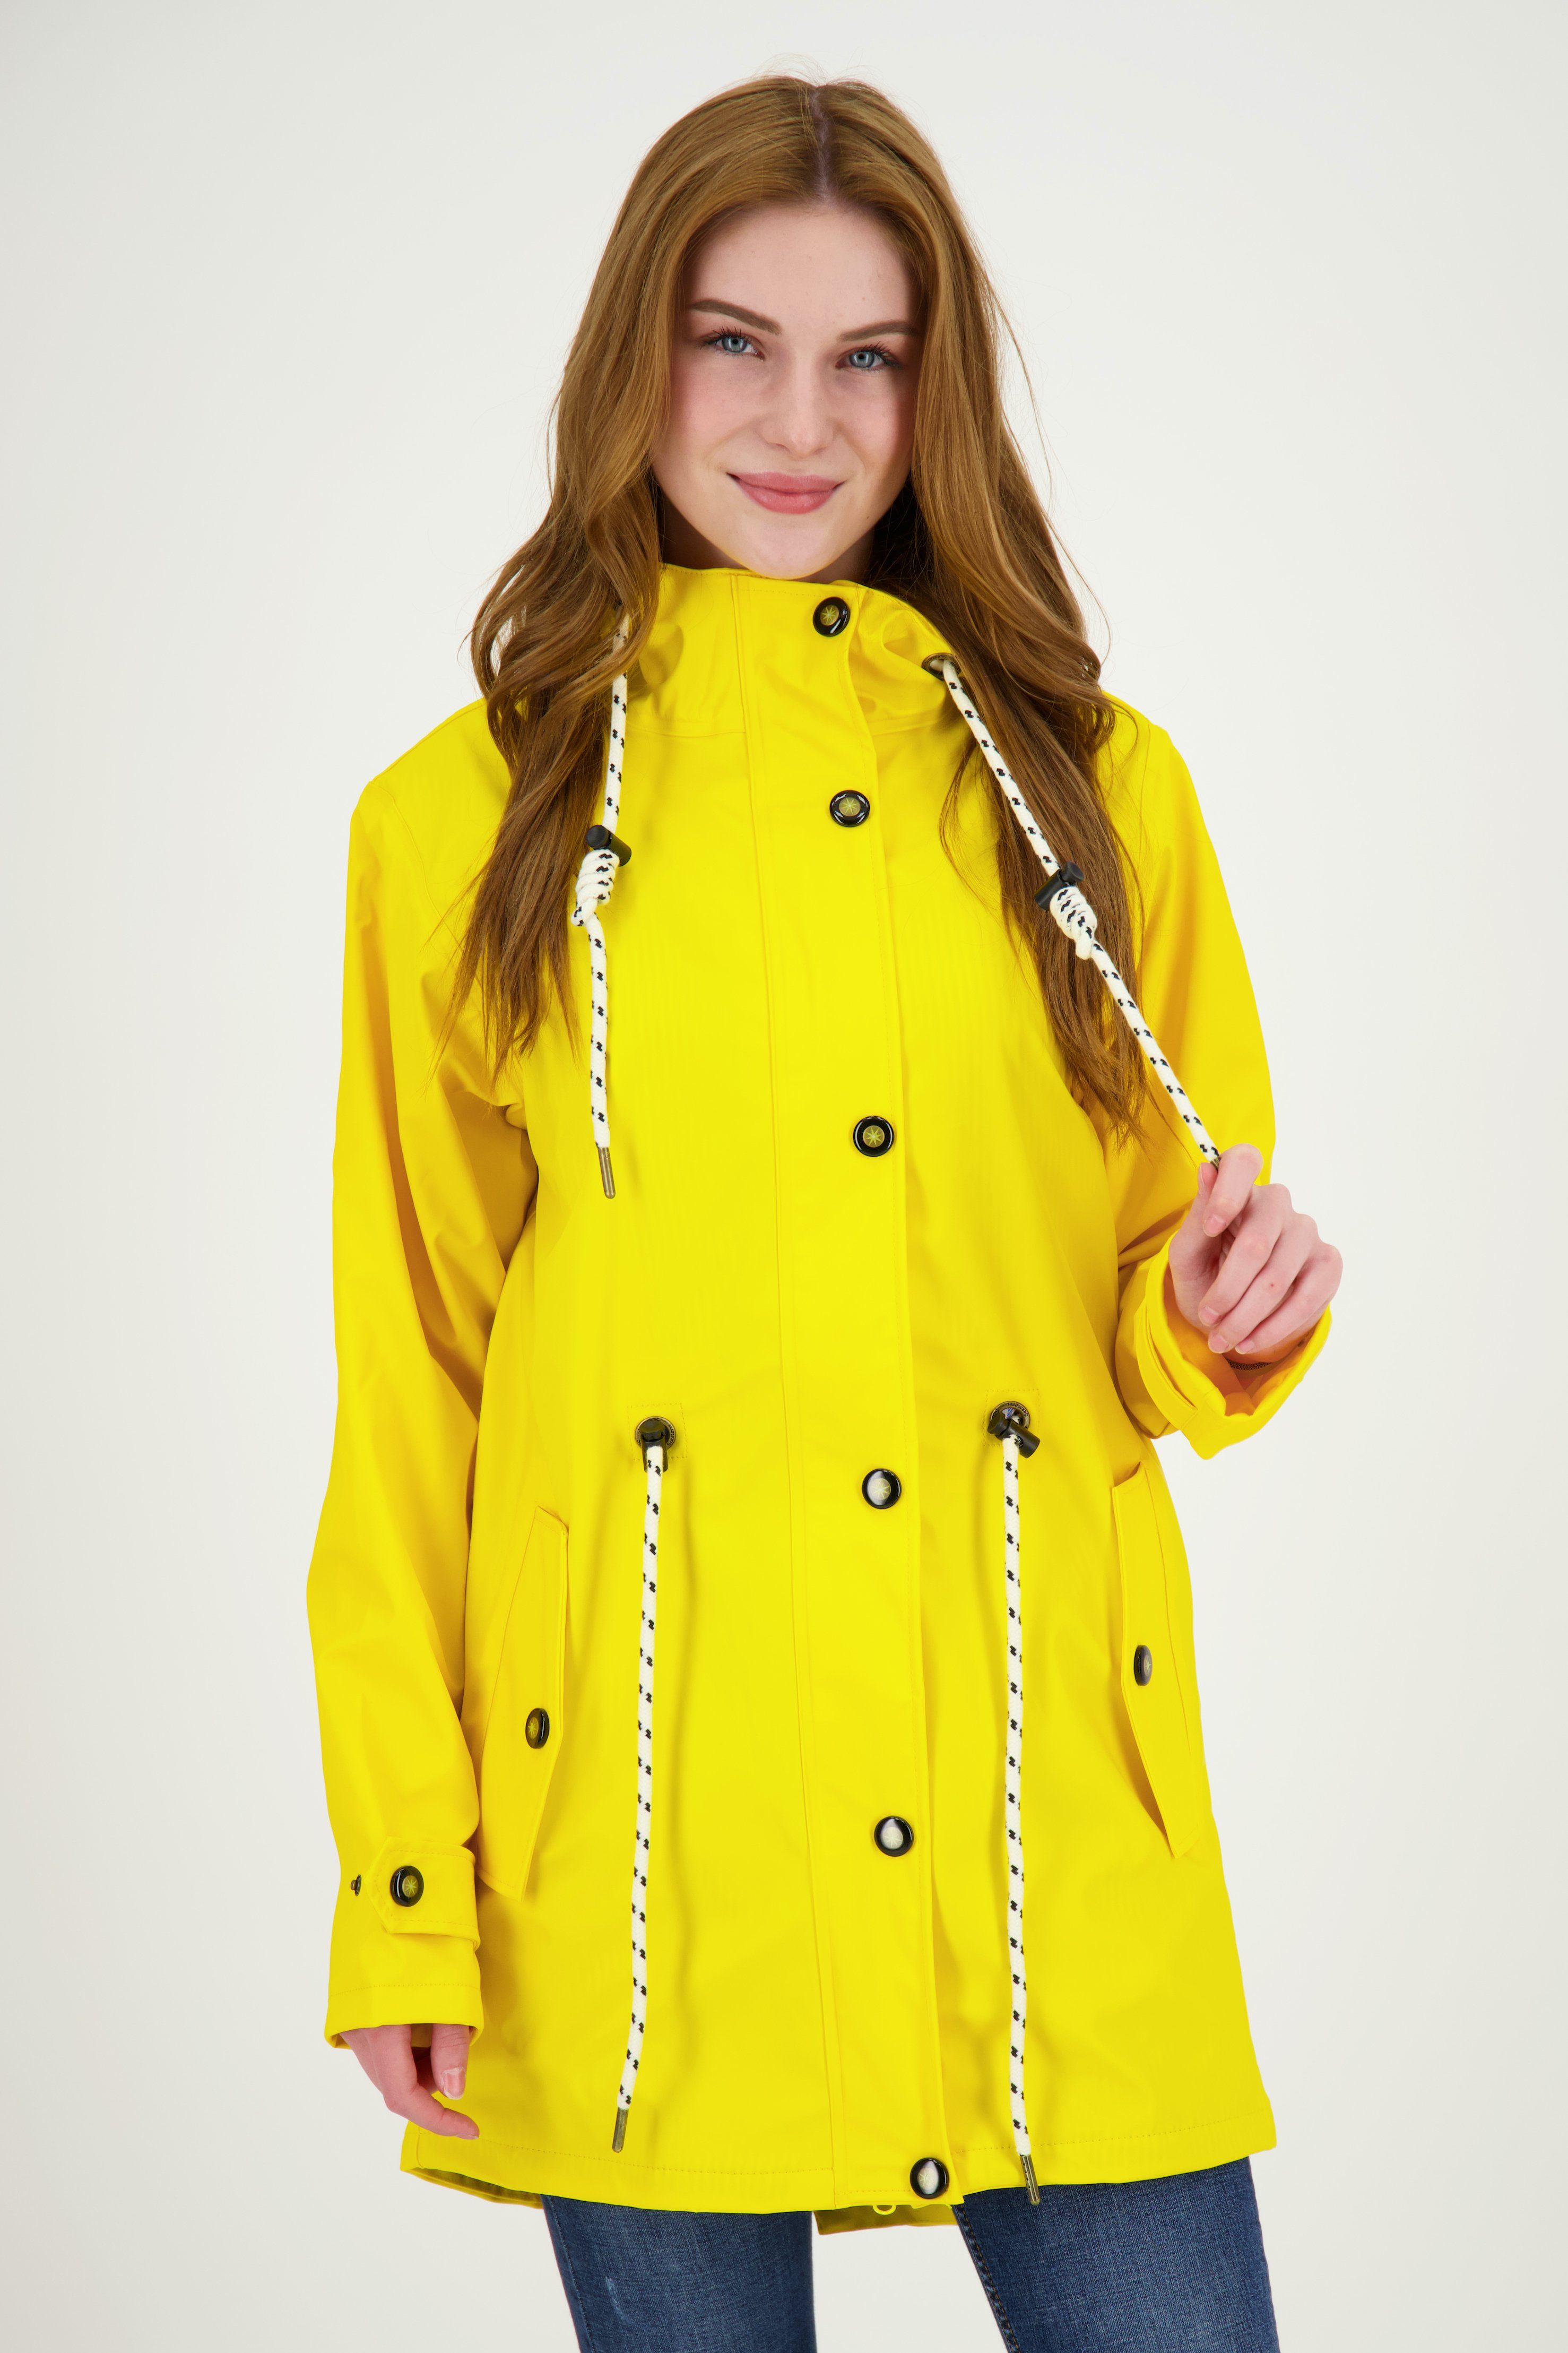 DEPROC Active Regenjacke gelb PEAK in Friesennerz LOVE erhältlich auch Großen WOMEN Größen UNI